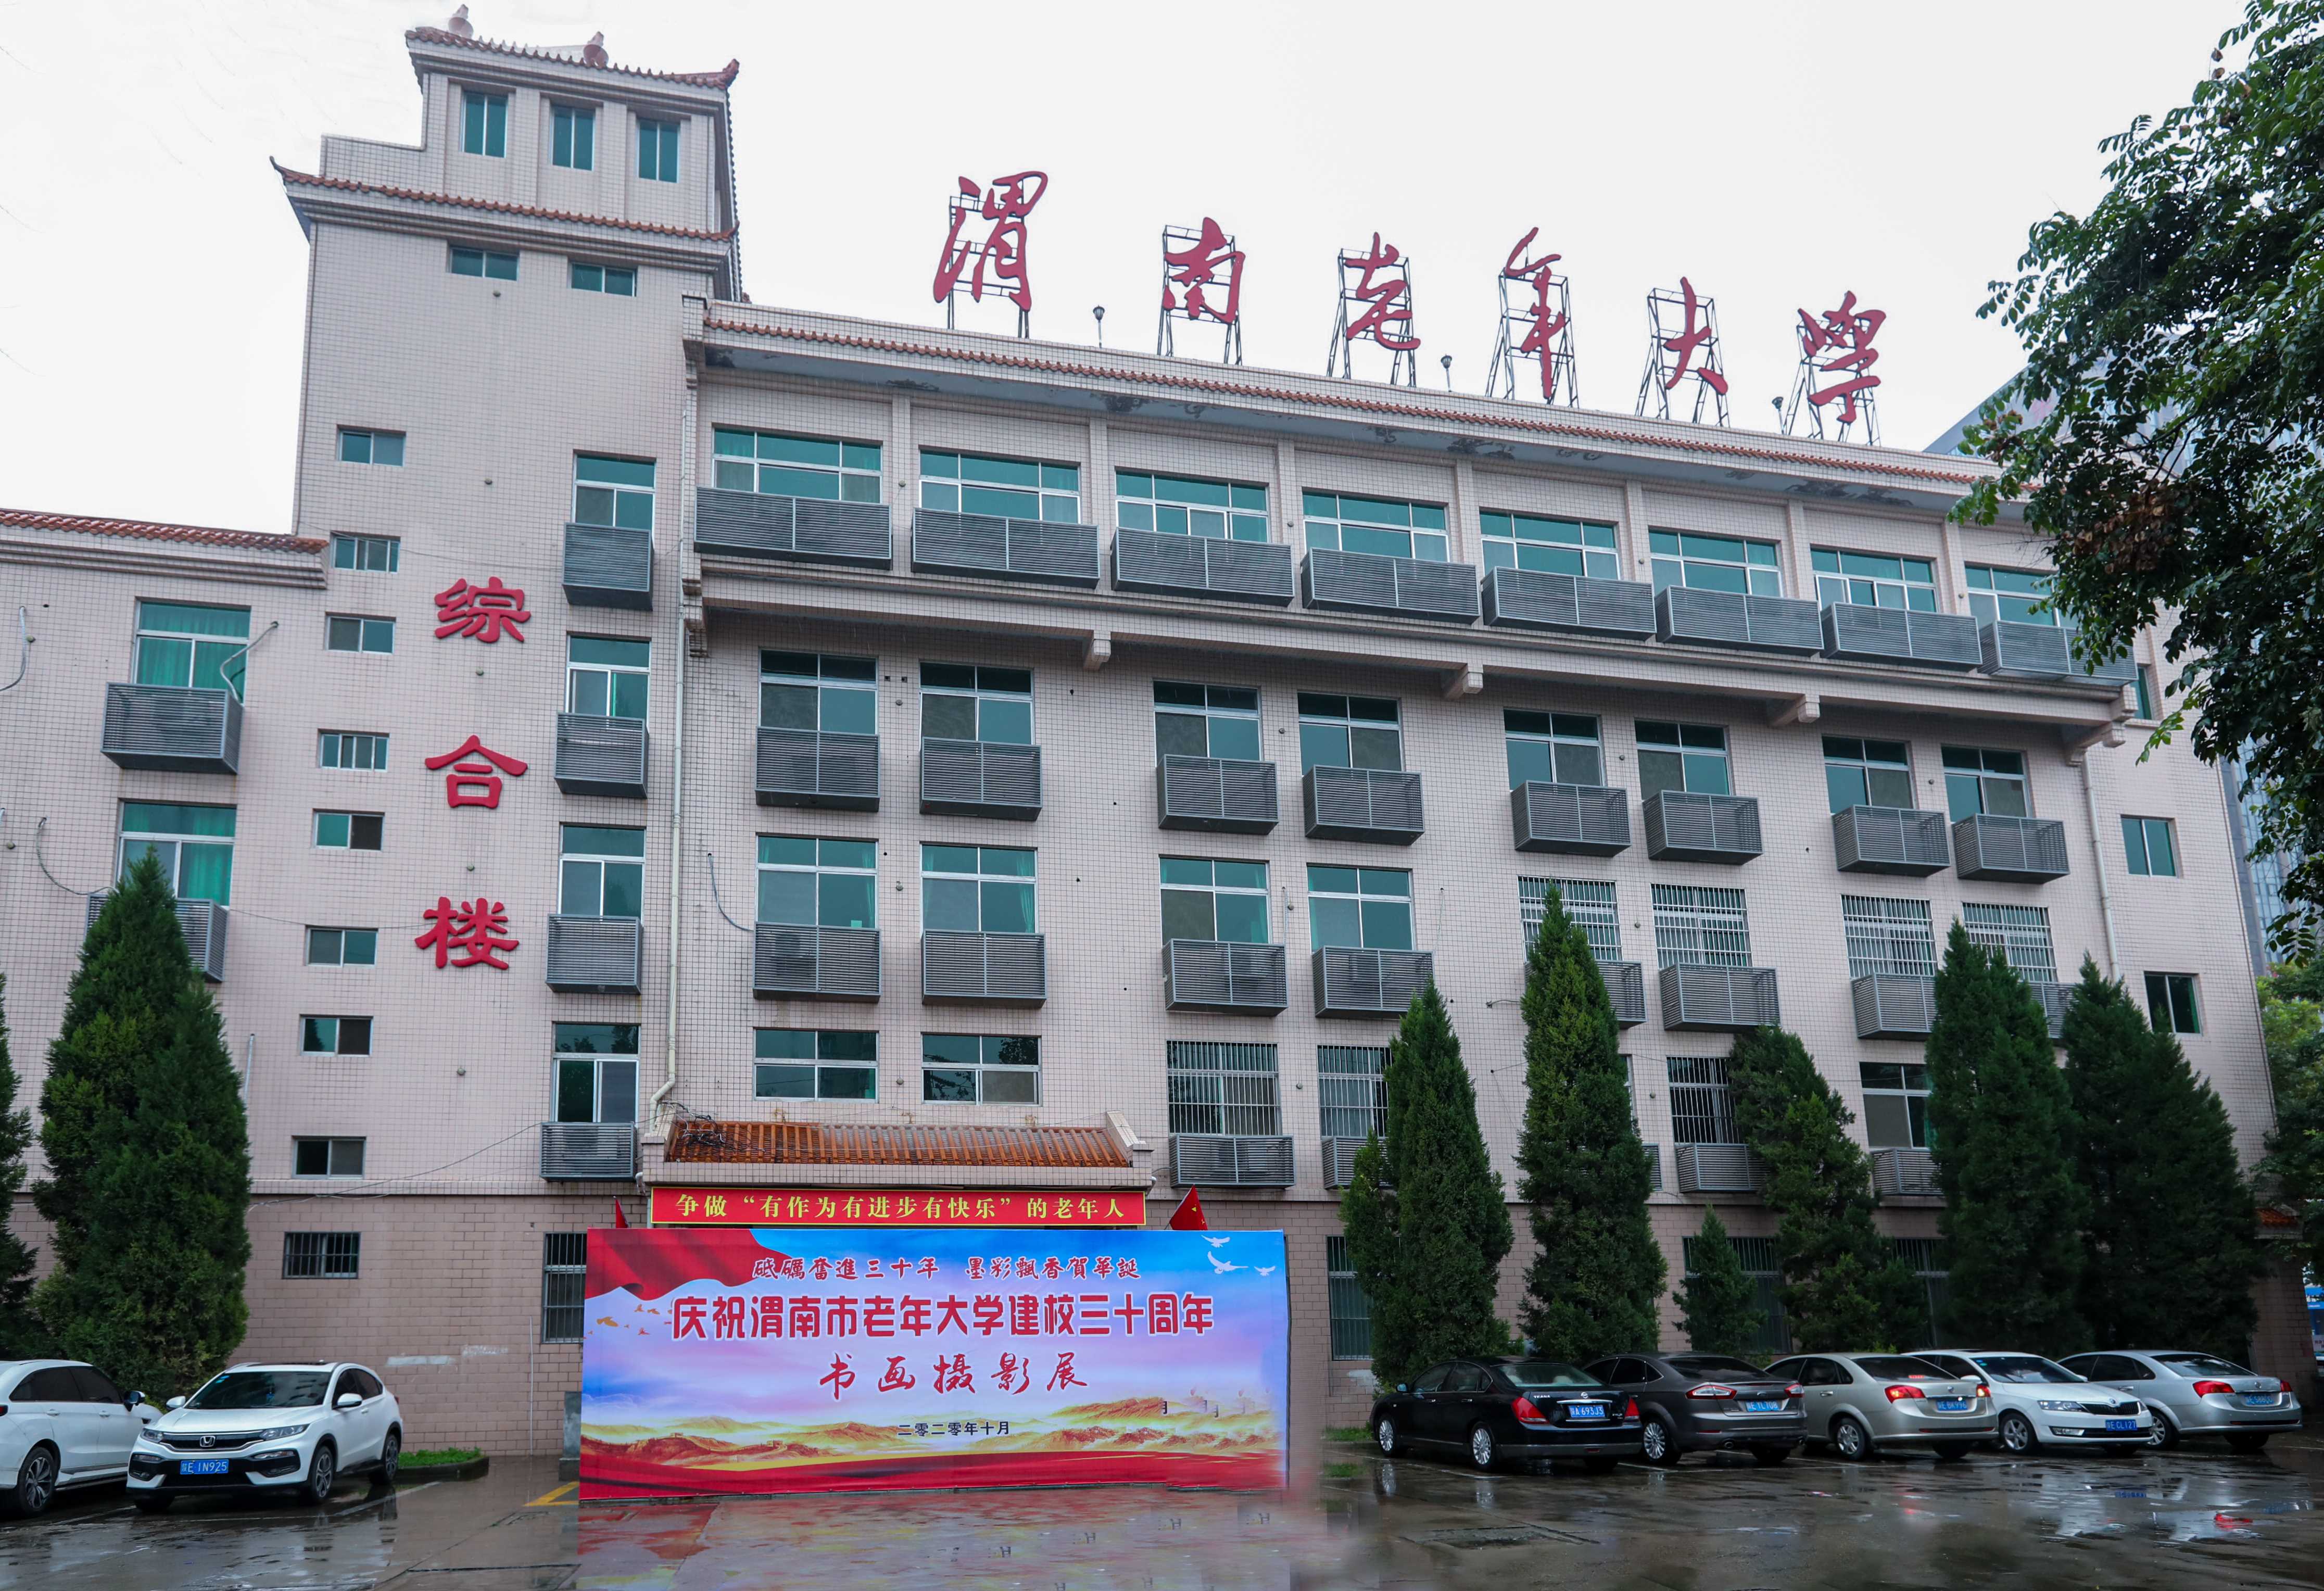 渭南市老年大学 举办庆祝建校30周年书画摄影展